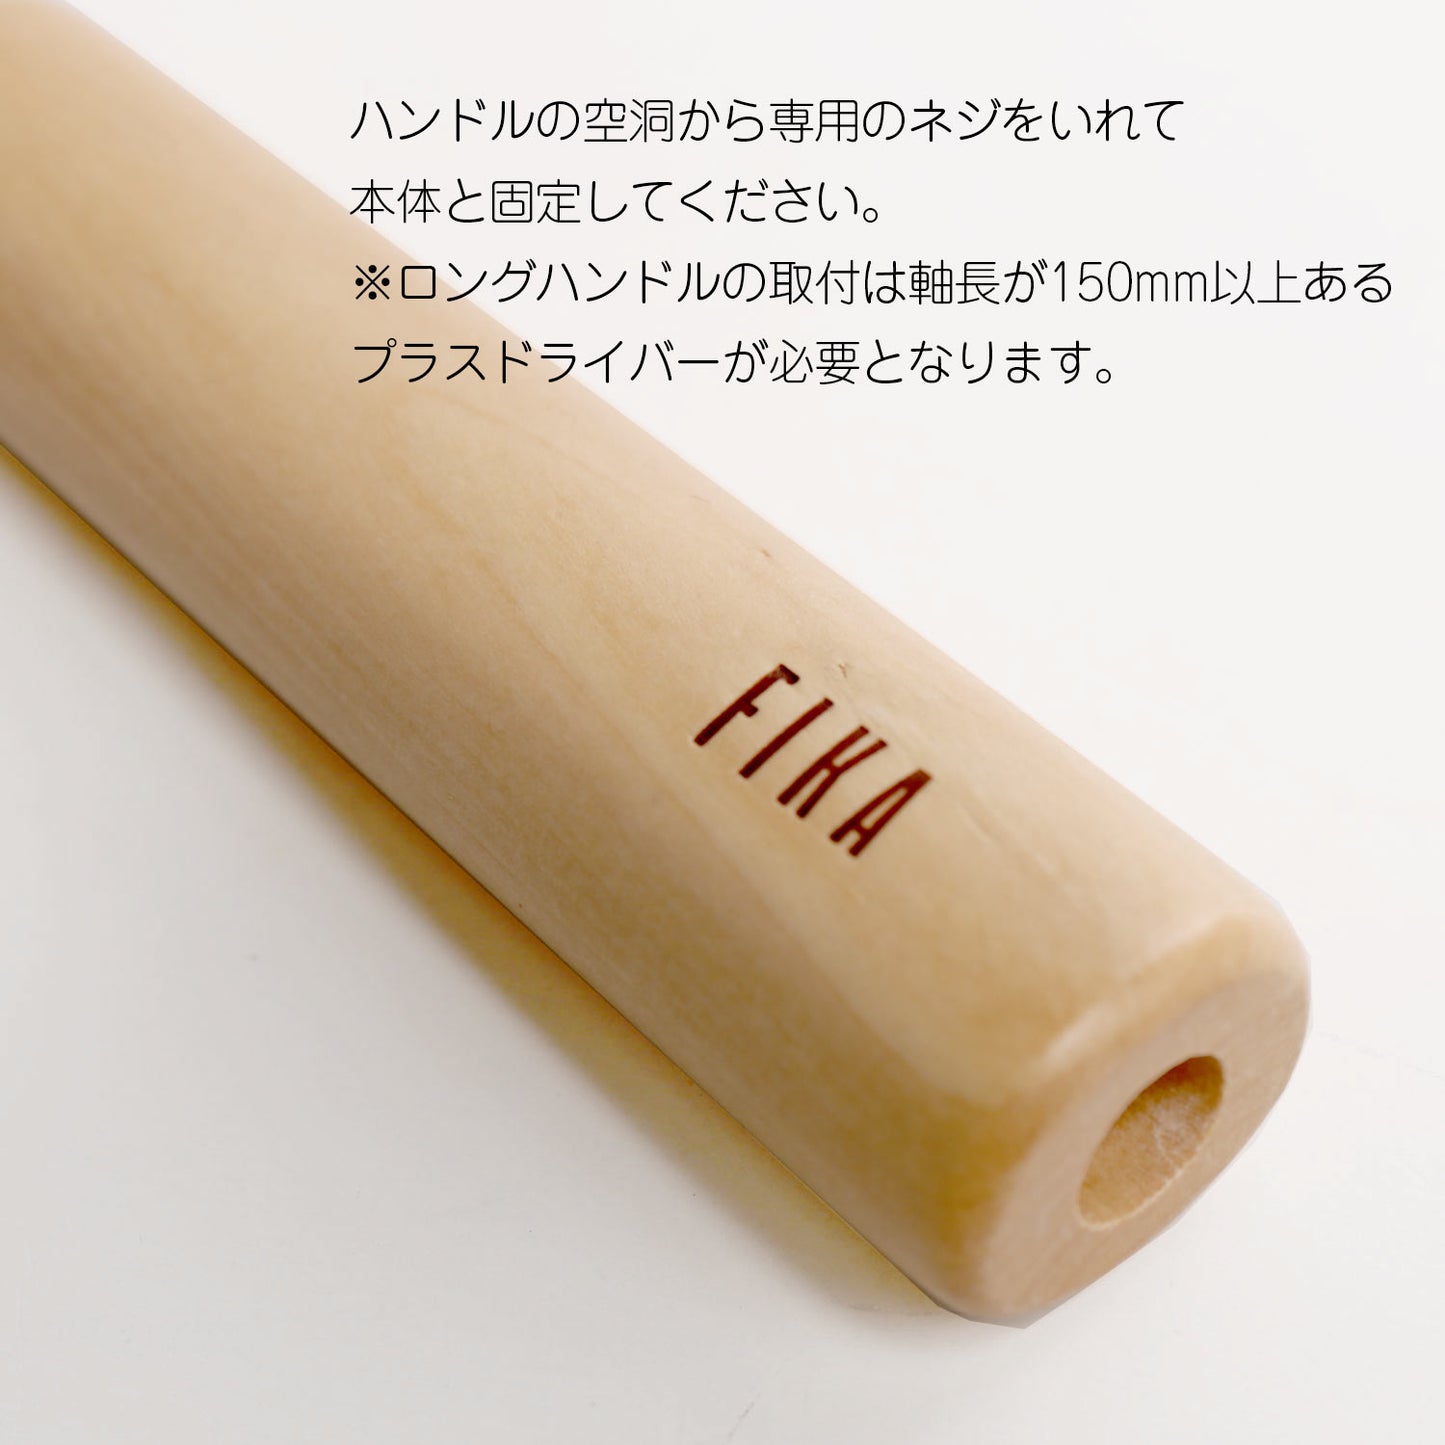 FIKA木製ハンドル取替用 単品